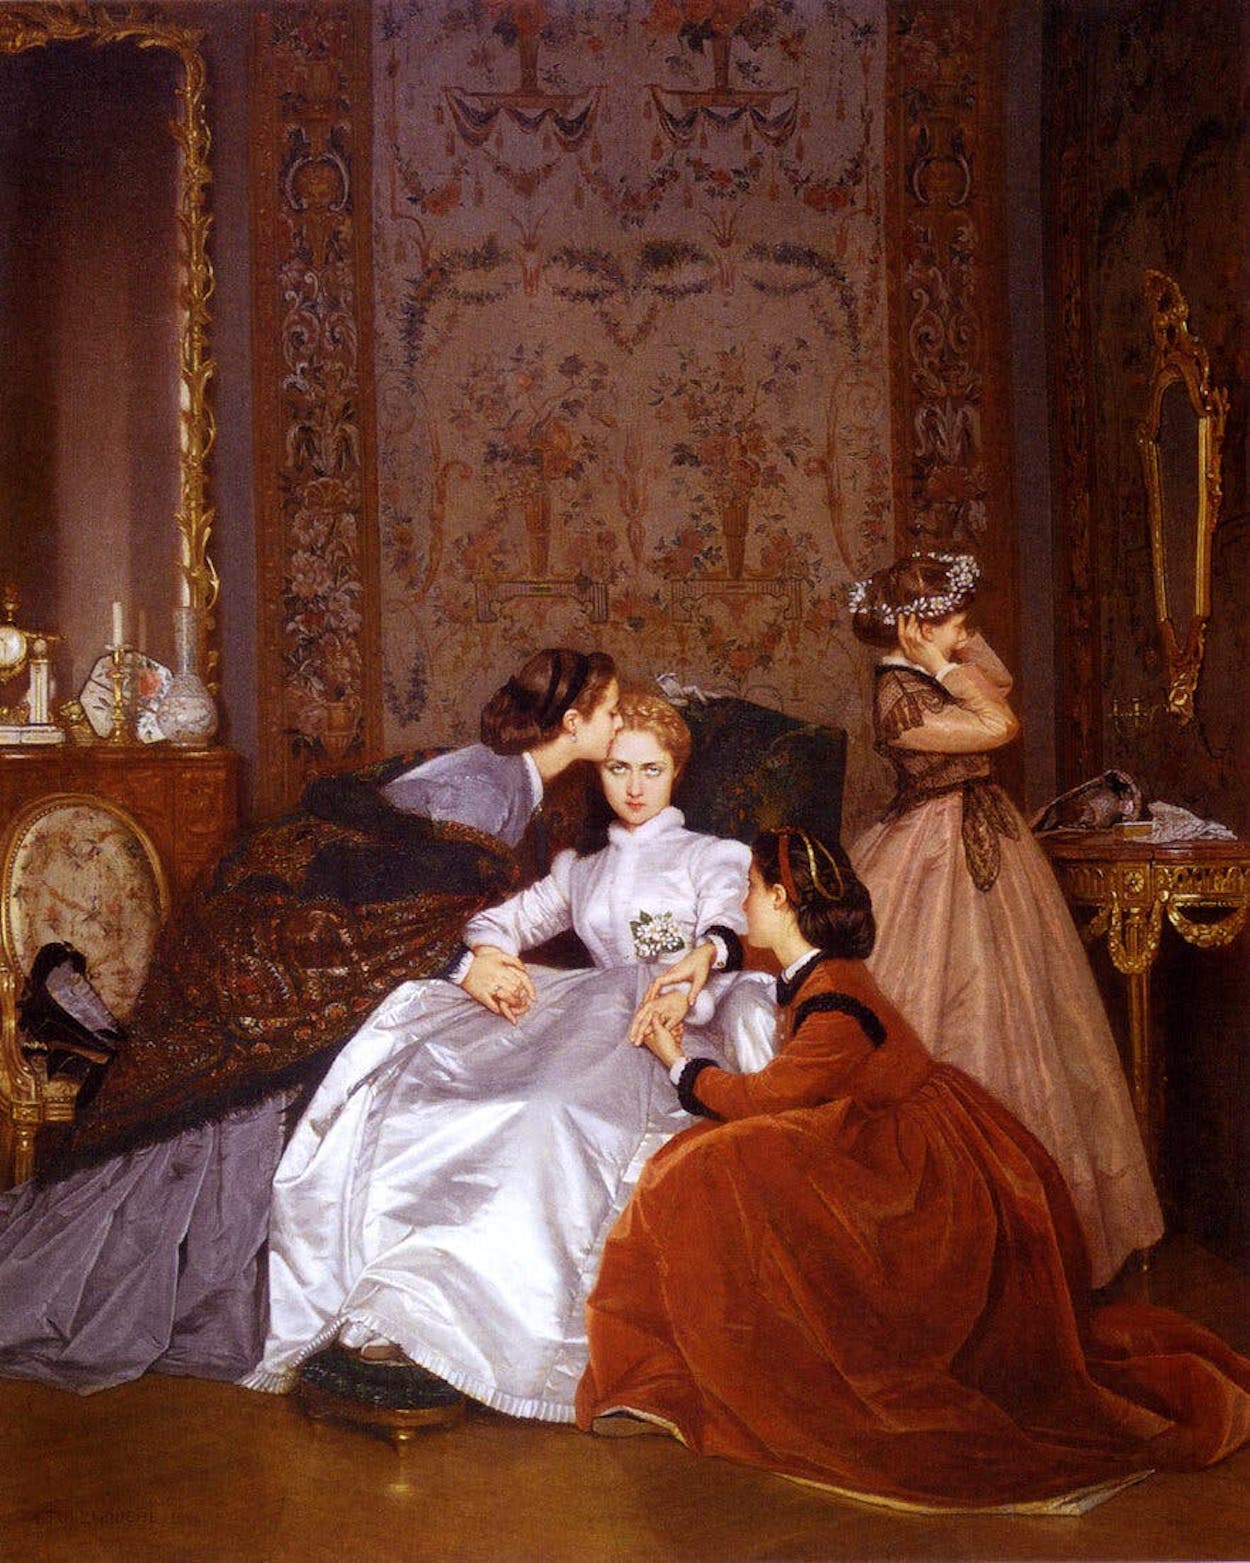 犹豫不决的未婚妻 by 奥古斯特 图尔穆奇 - 1866 - 65 x 54 cm 